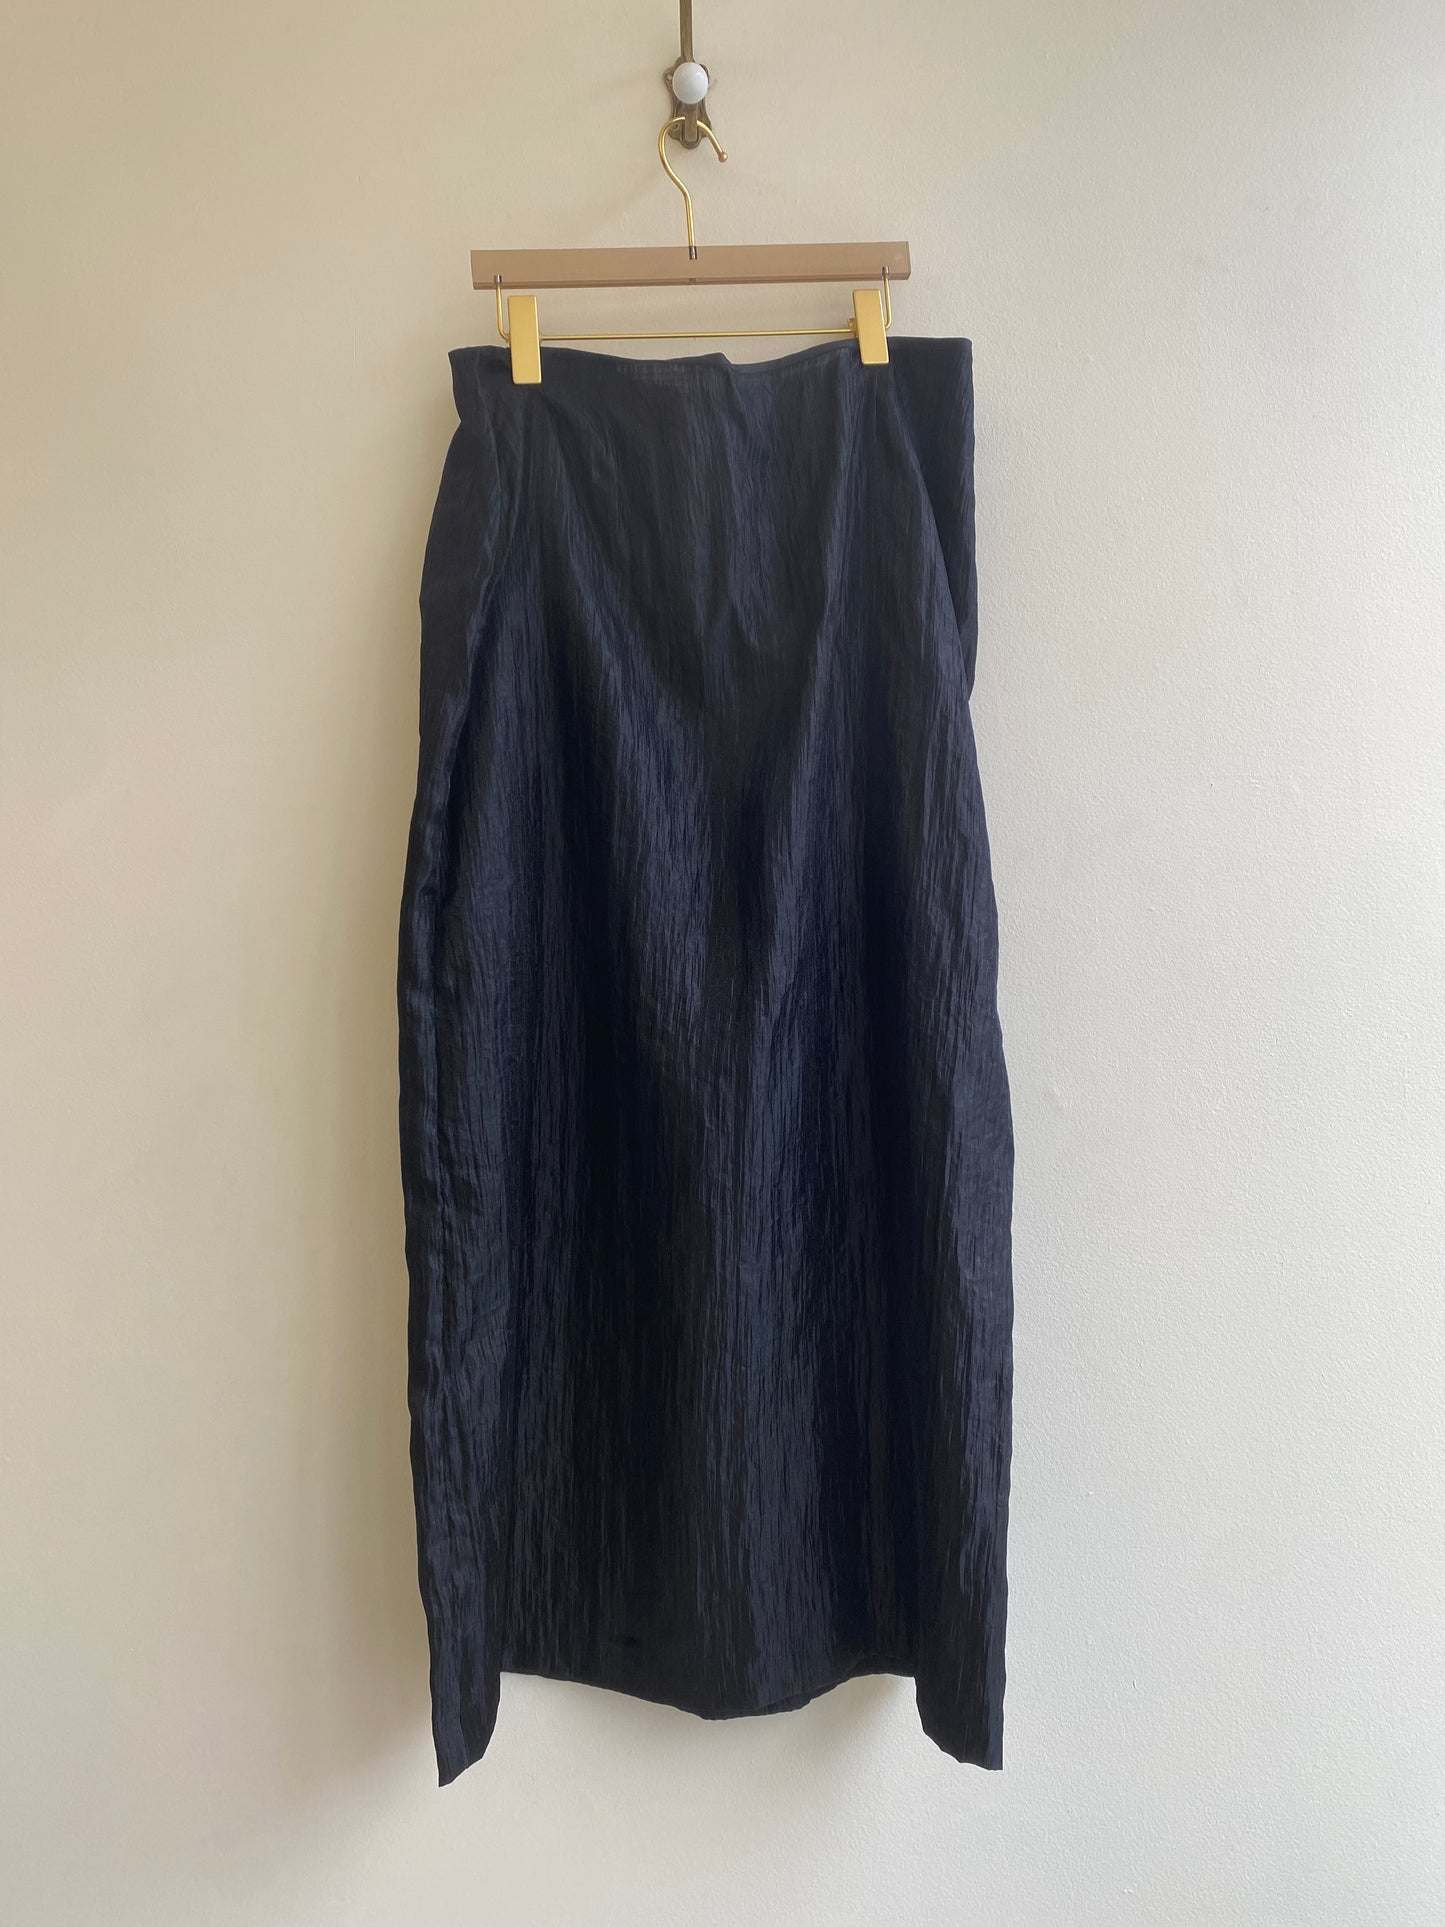 DKNY Shear Black Skirt